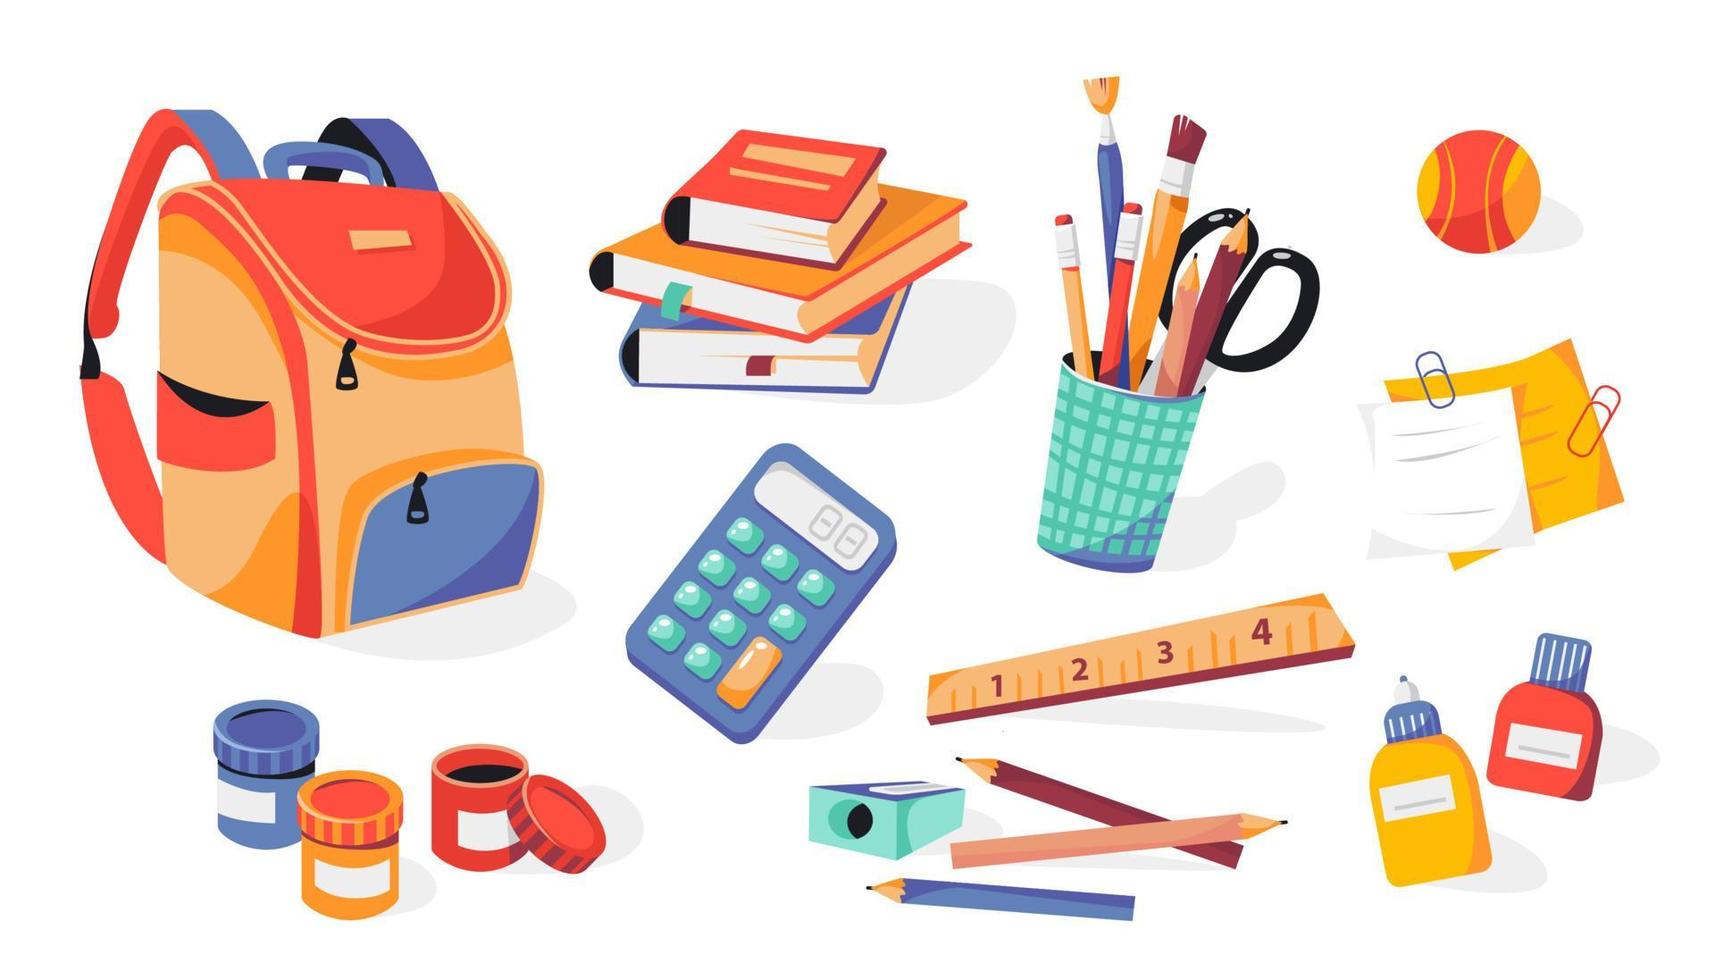 skolmaterial, ryggsäck, pennor, penslar, färger, linjal, vässare, klistermärken, miniräknare, böcker, lim. tillbaka till skolan. vektor